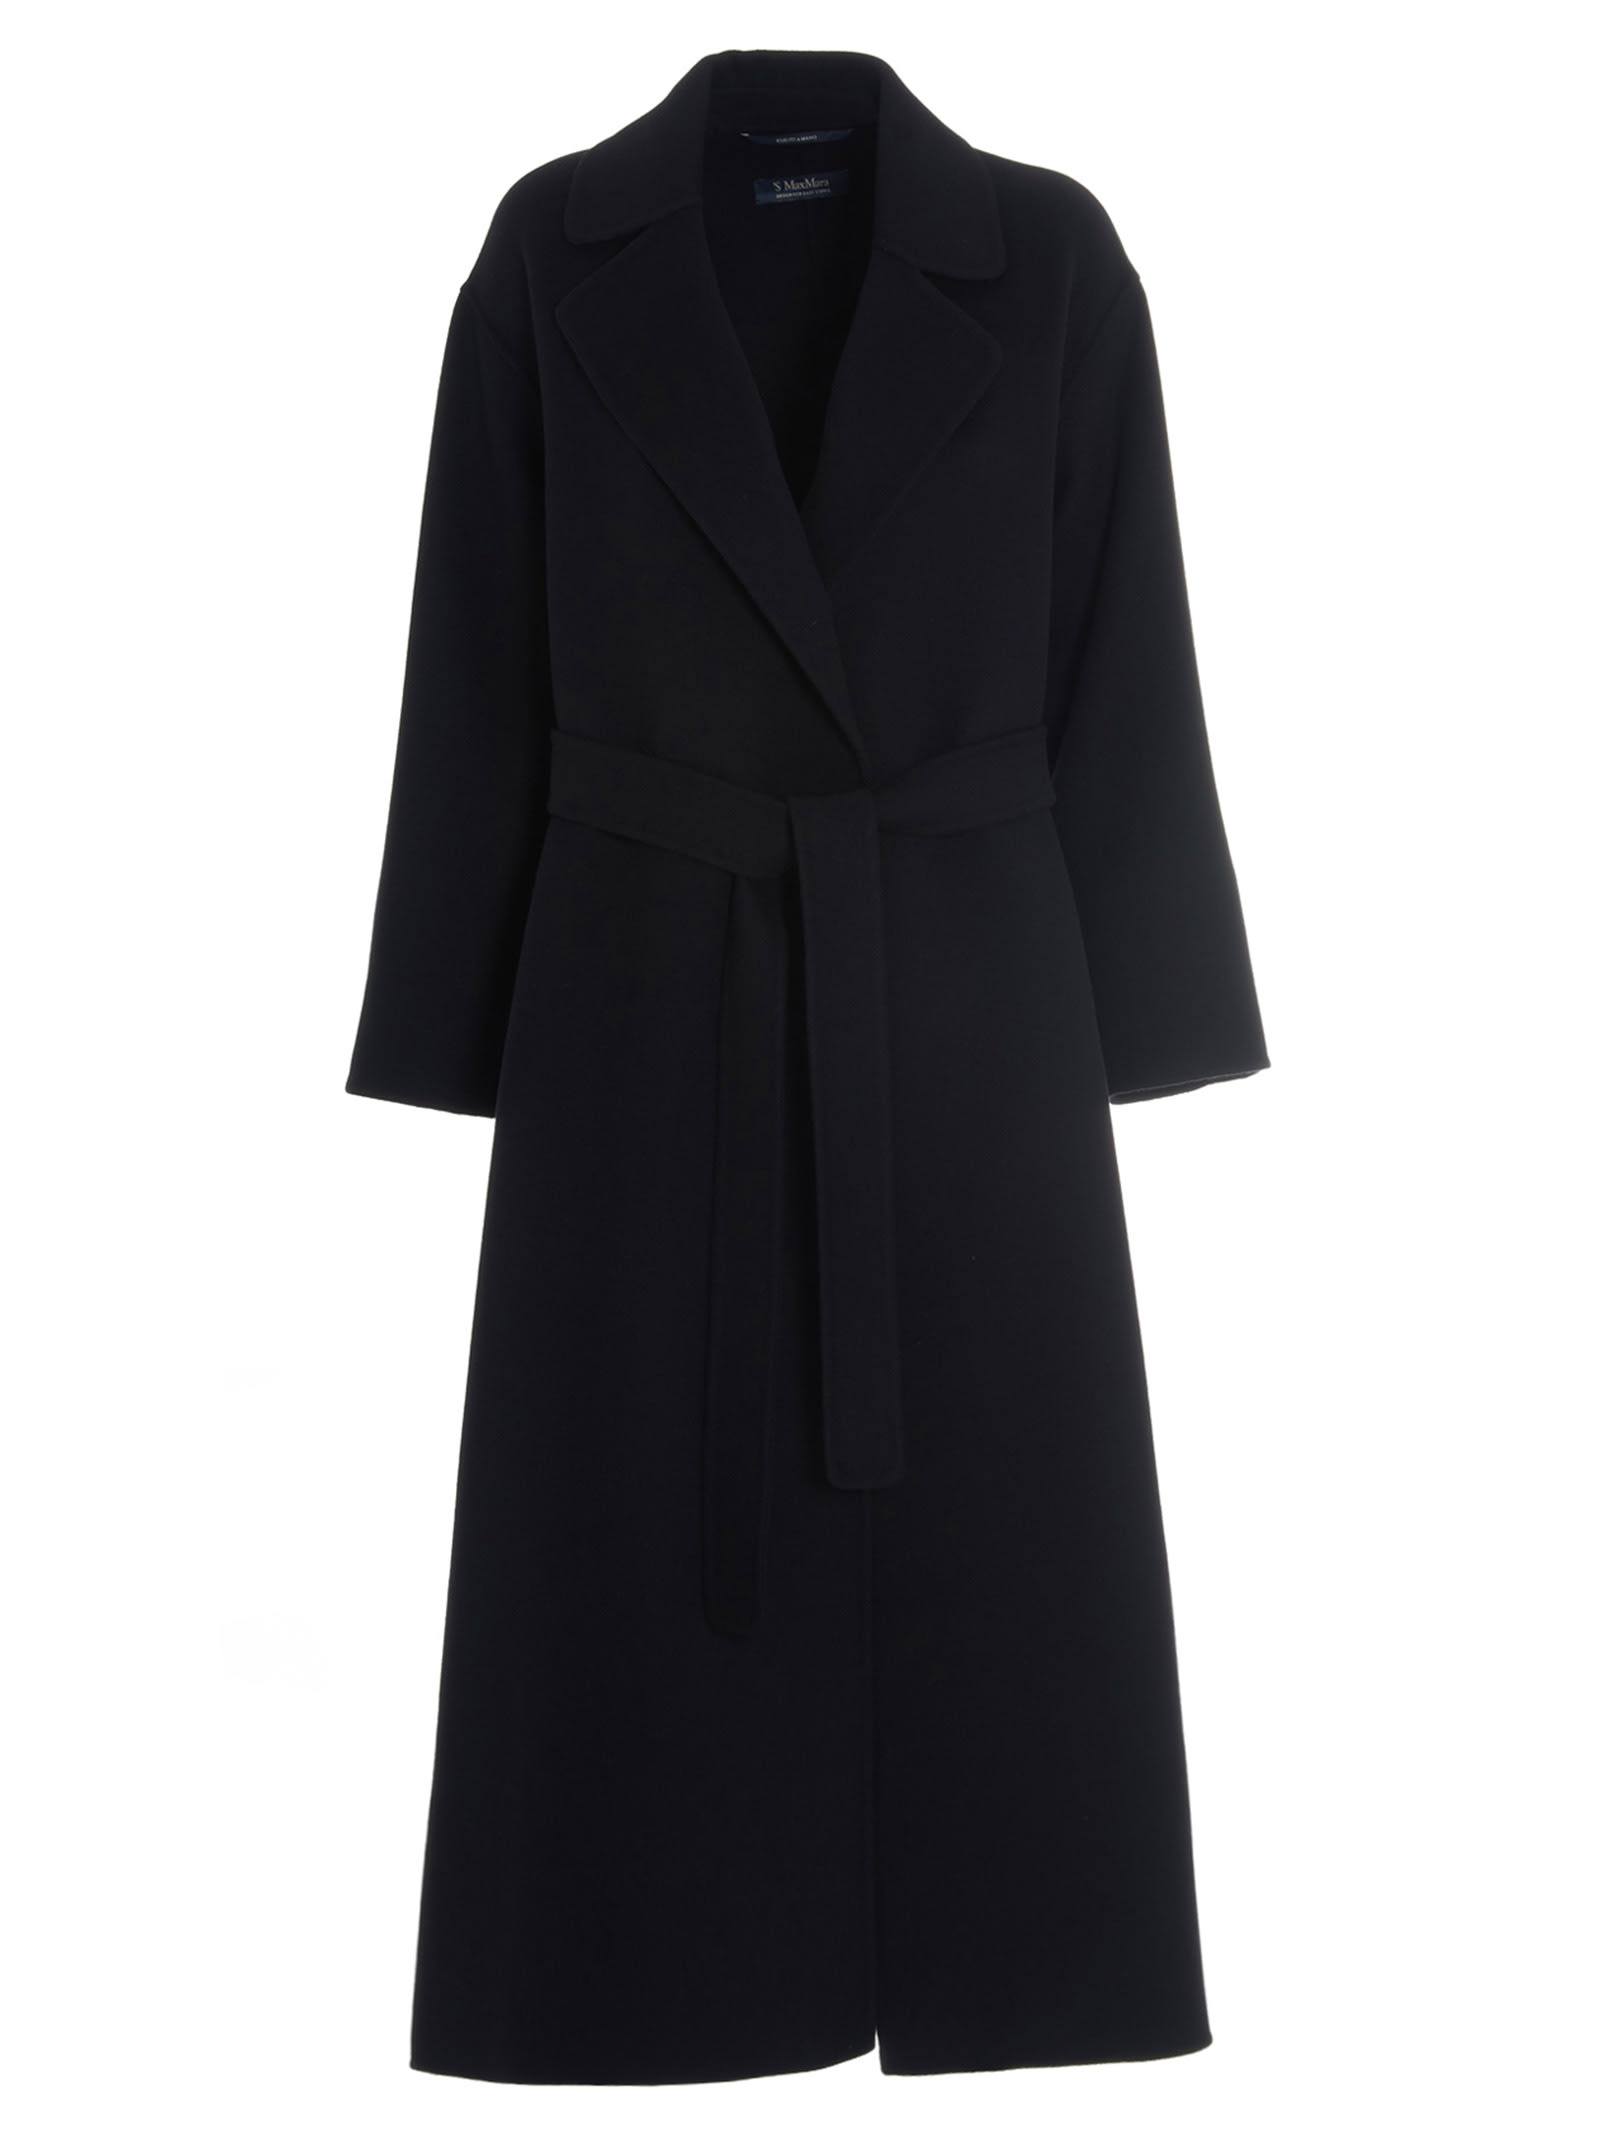 Max Mara S Elena Coat In Black | ModeSens